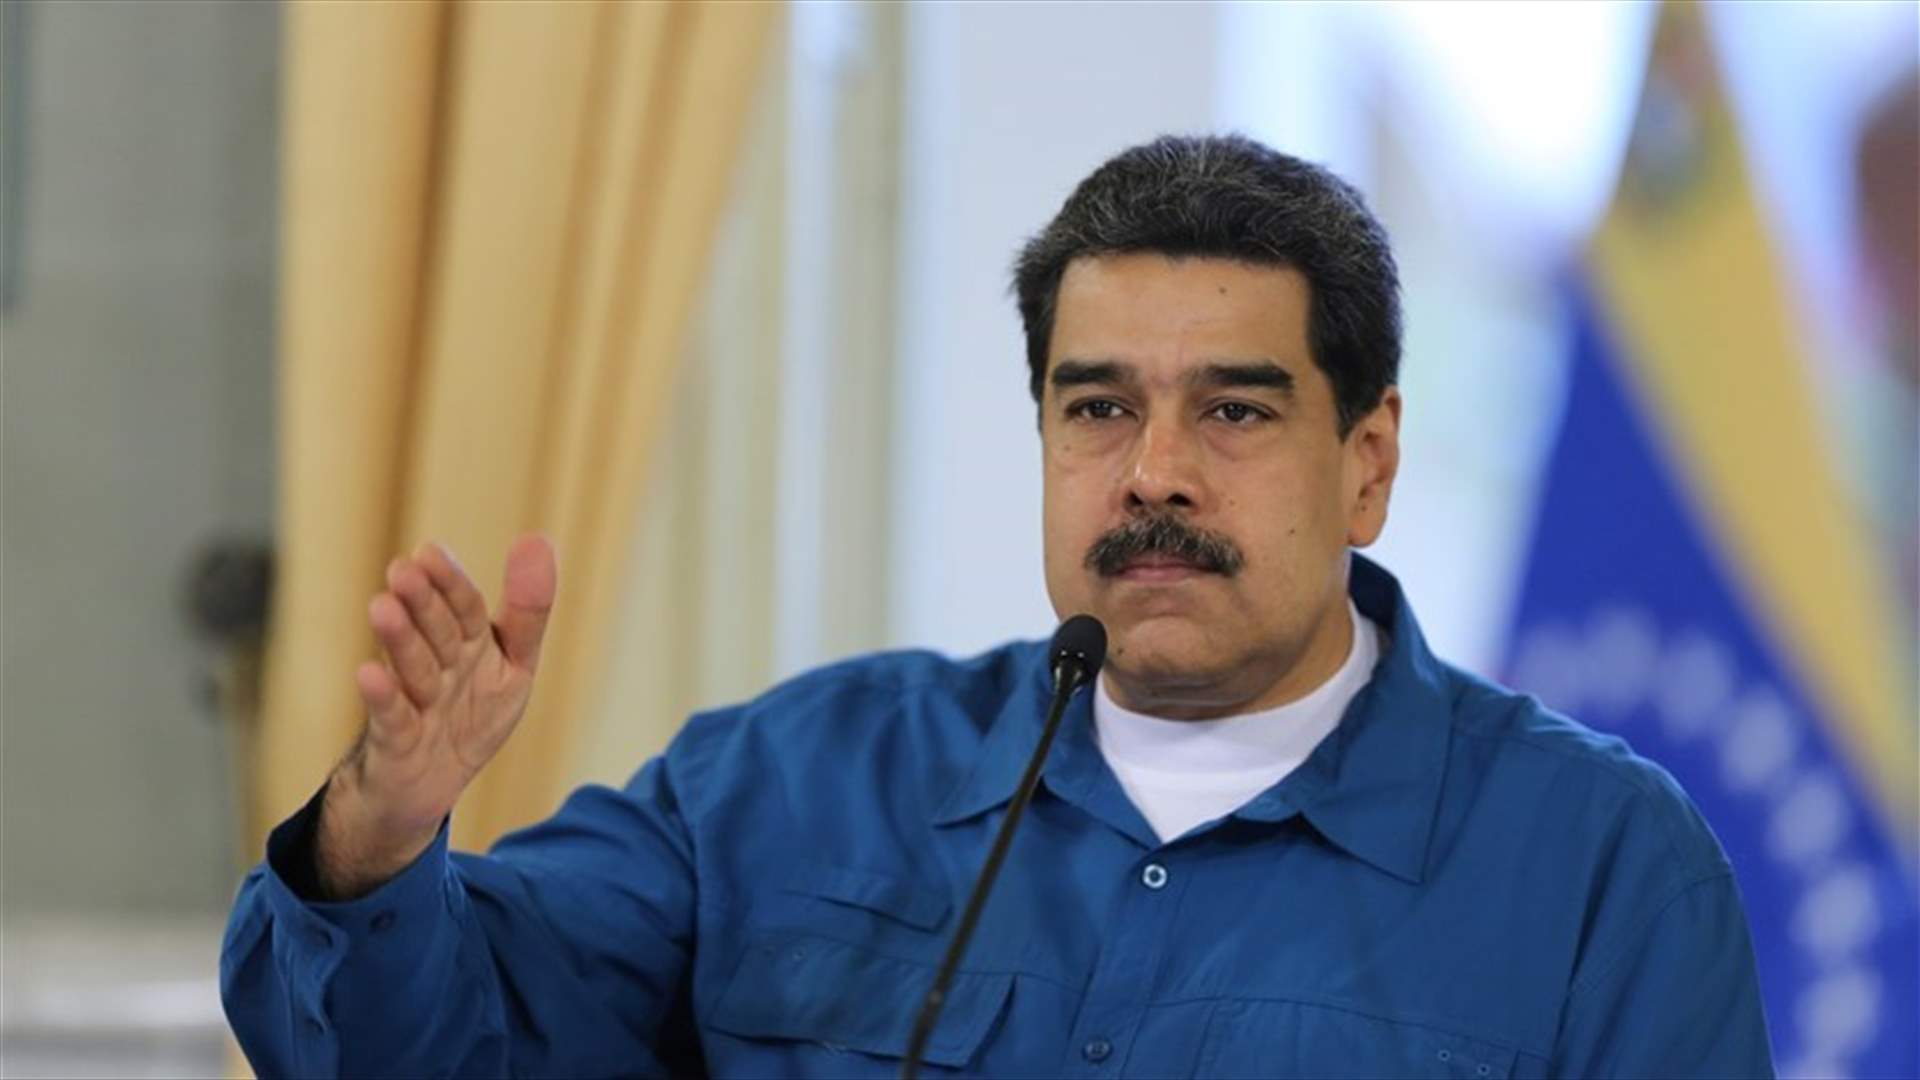 الرئيس الفنزويلي يريد اتفاقا اجتماعيا واسعا مع المعارضة في فنزويلا